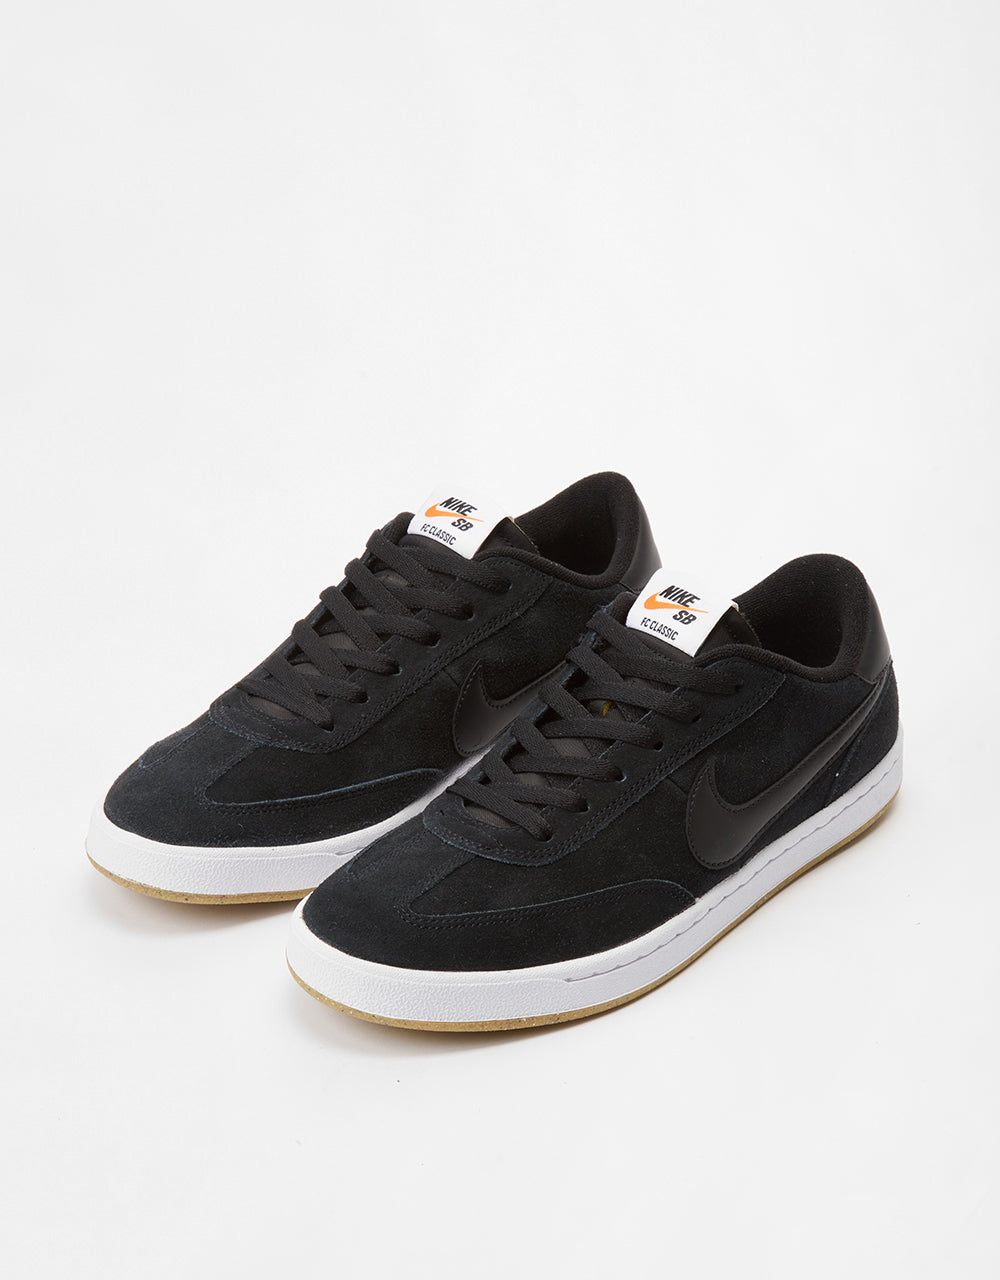 Nike SB FC Classic Low Skate Shoes - Black/Black-White-Vivid Orange